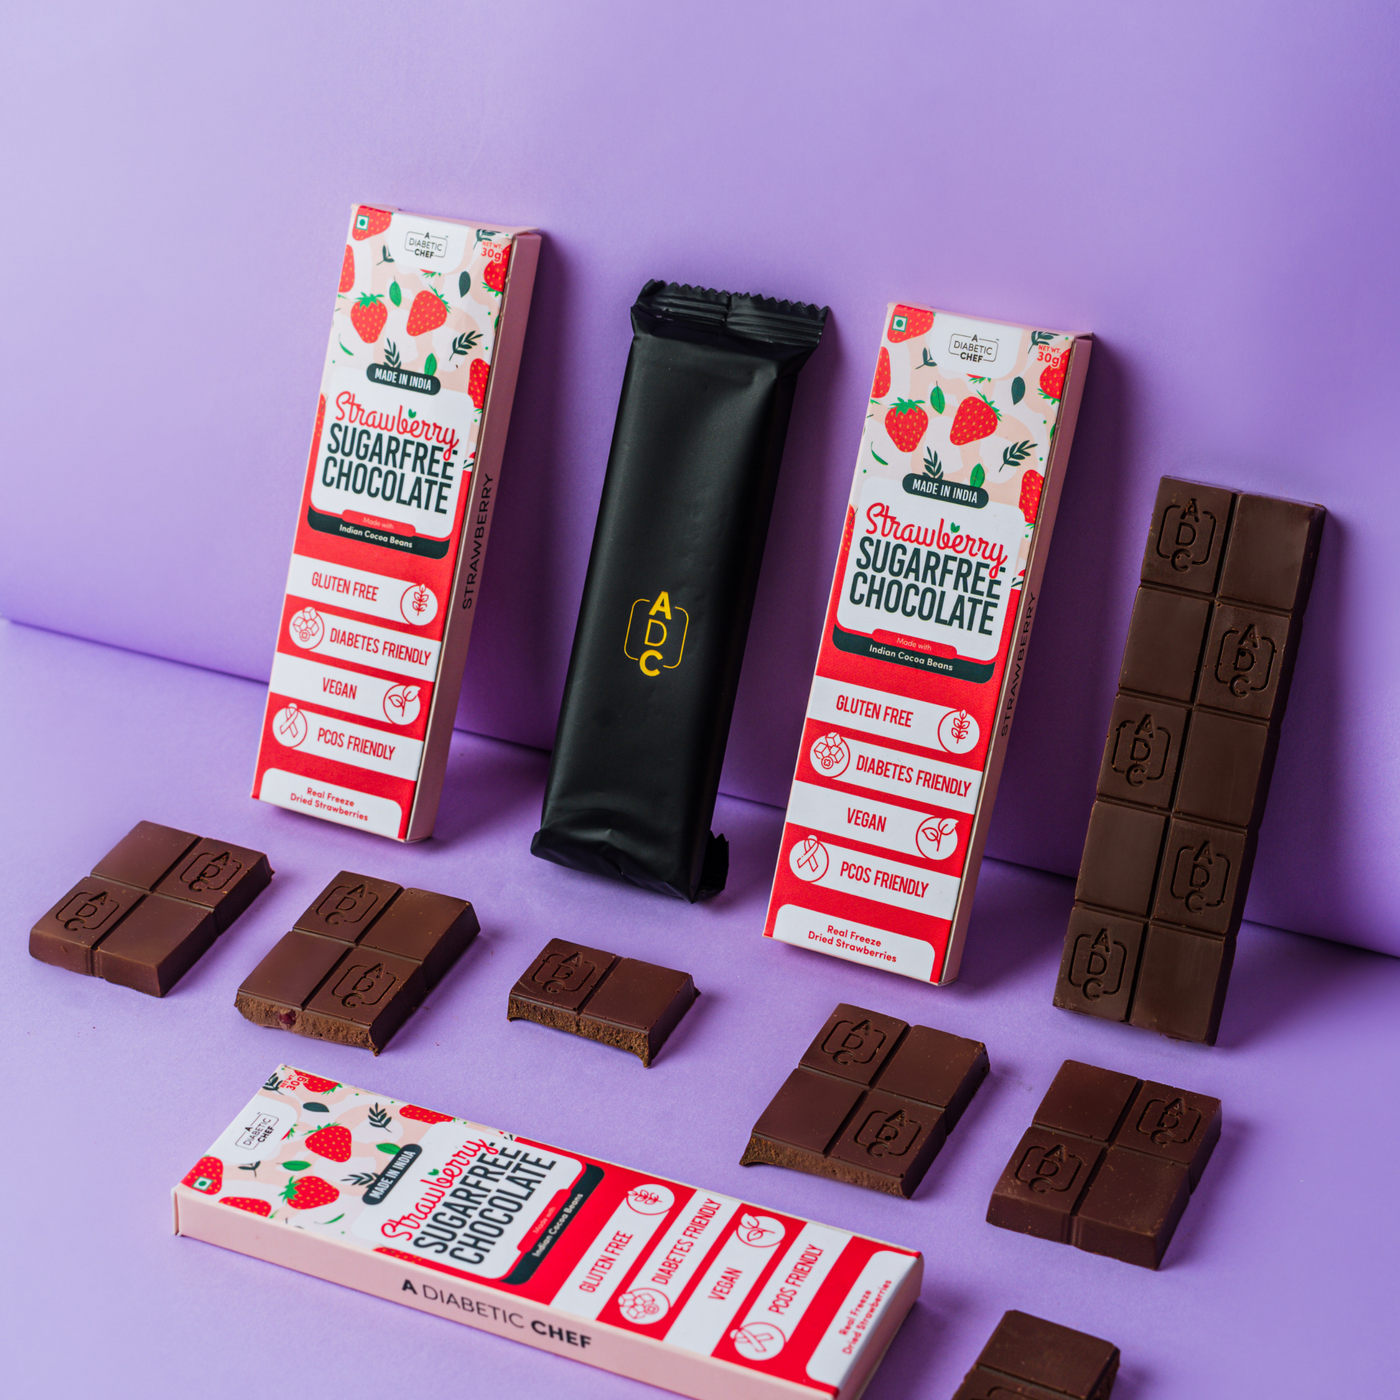 Strawberry Sugarfree Chocolate | Diabetes Friendly Premium Dark Chocolate | Vegan - 30g each (Pack of 3)